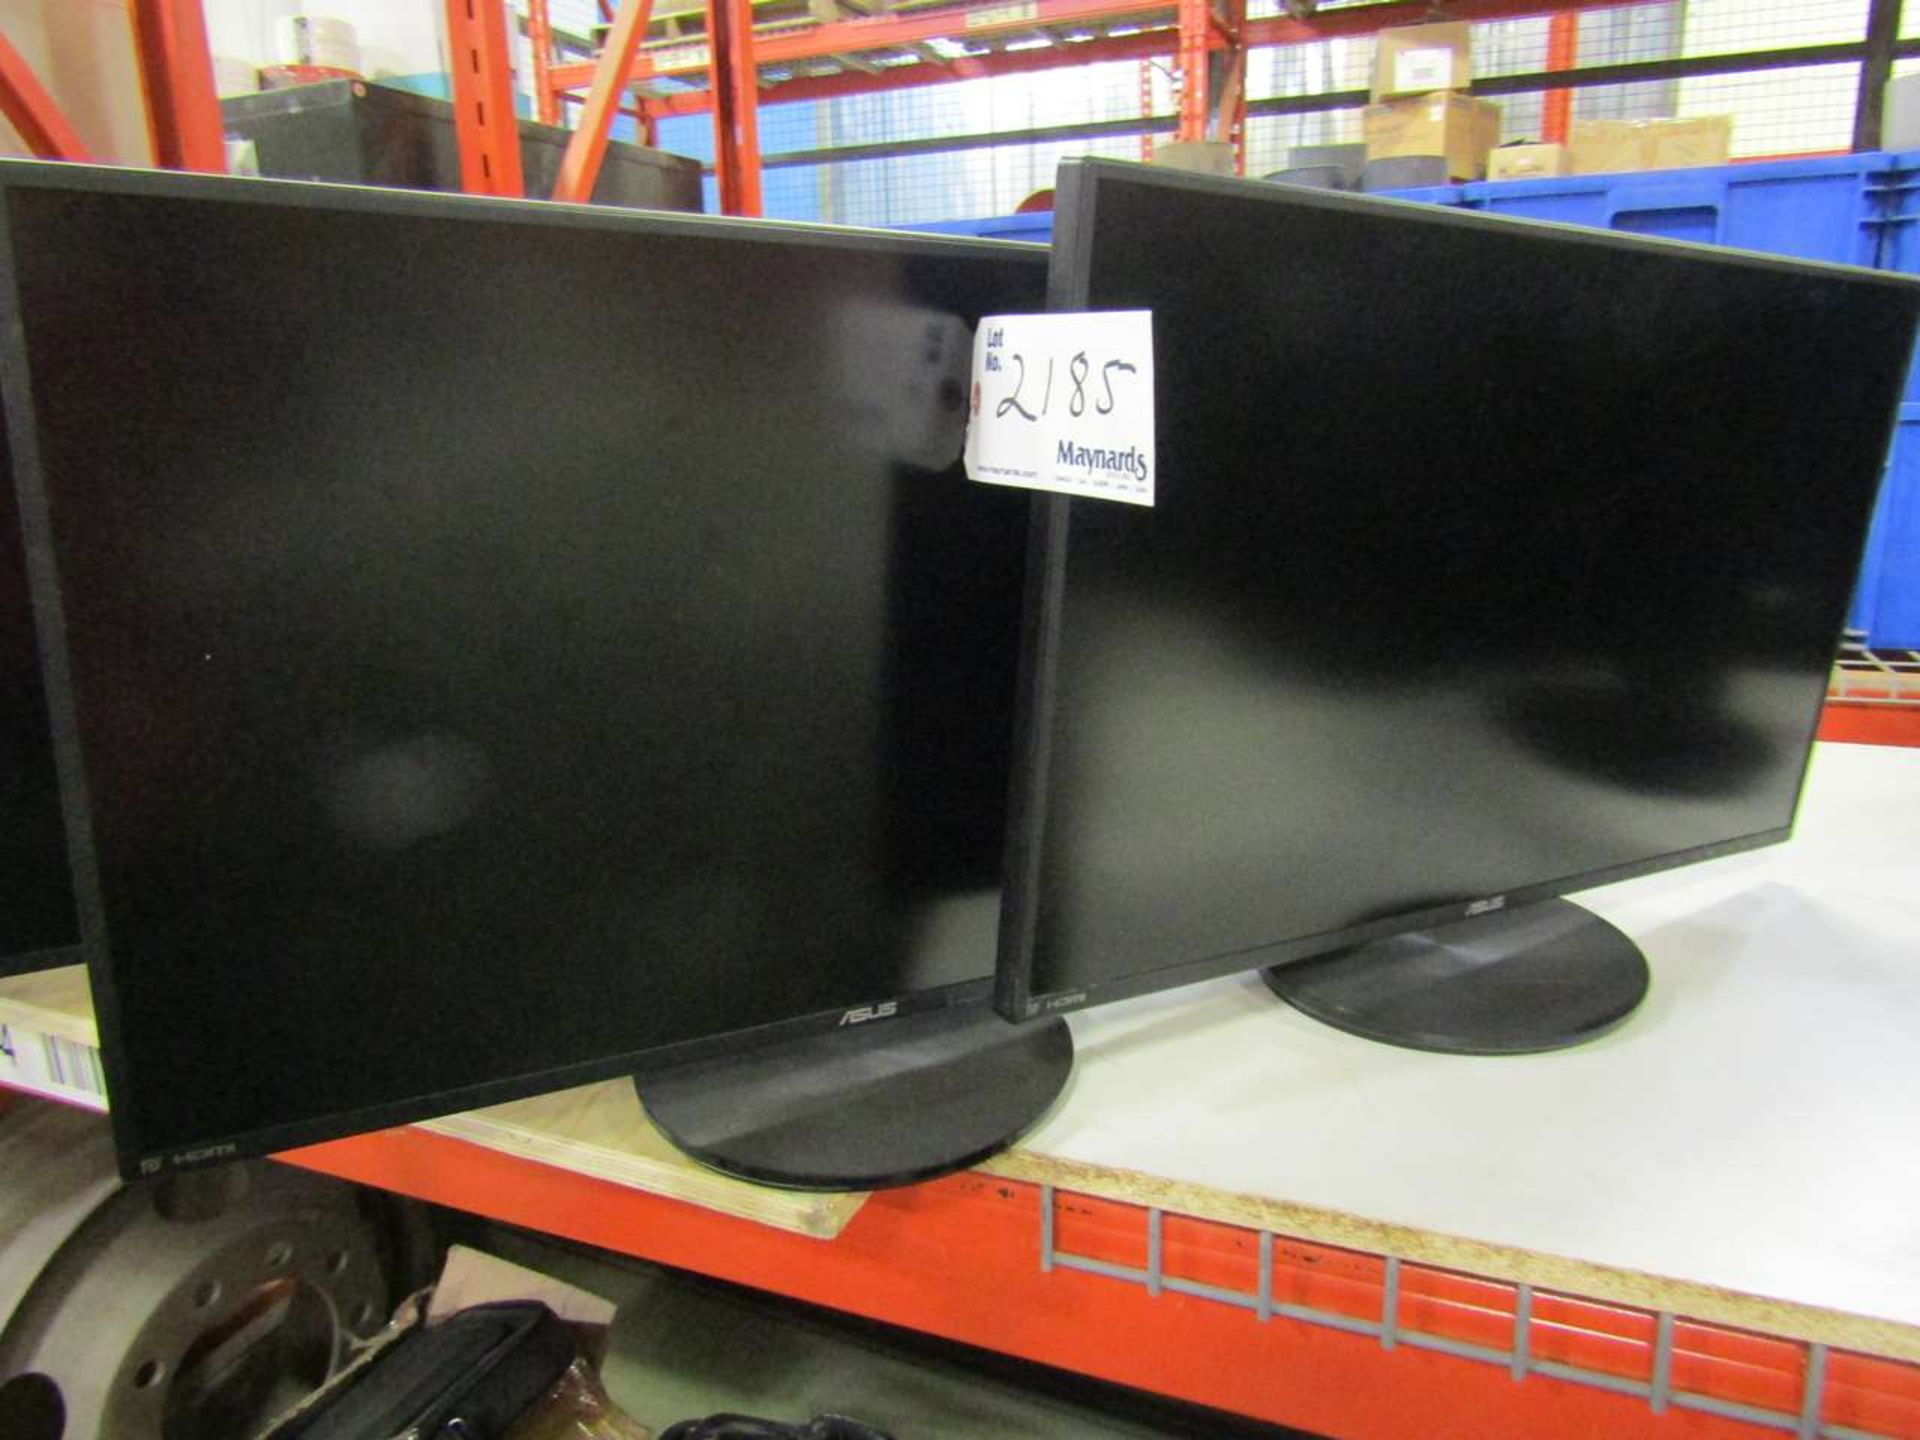 Asus 27" LCD Monitors